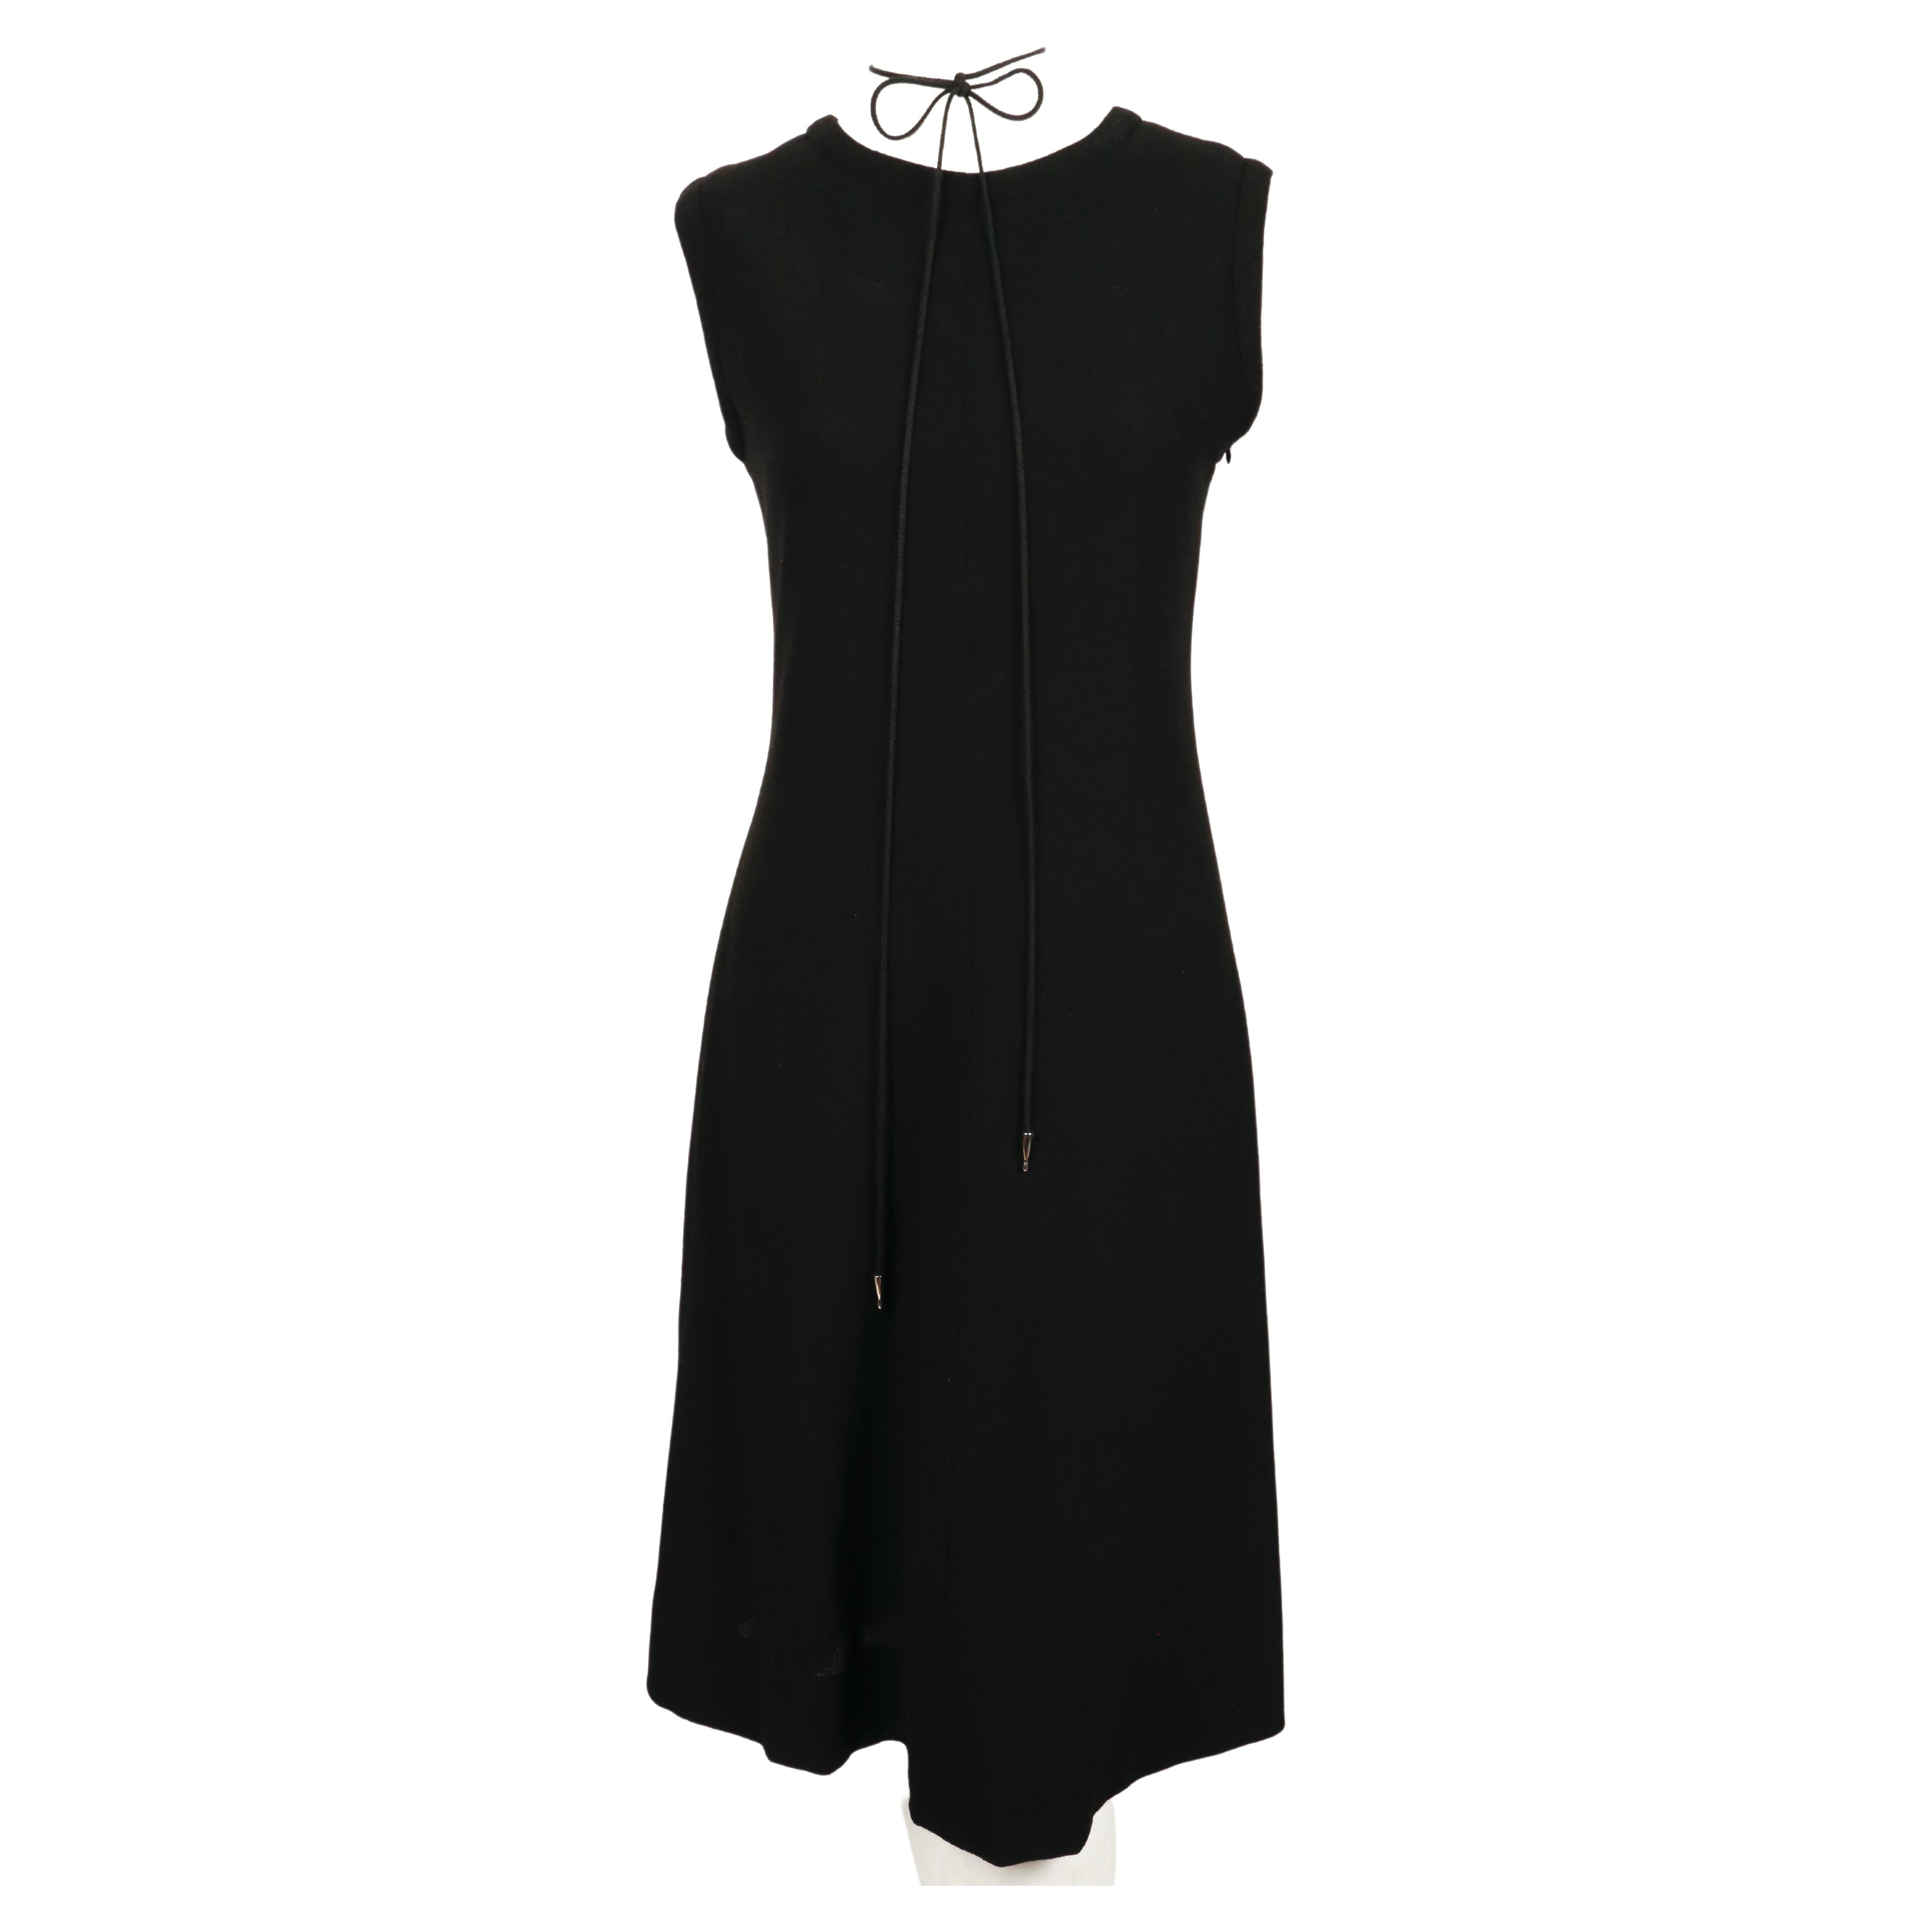 Robe en laine noire de jais avec dos à lacets conçue par Yves Saint Laurent au début des années 1990. La robe a une légère forme en A. Les cravates ont des extrémités en métal argenté brillant et peuvent être portées de différentes manières. De